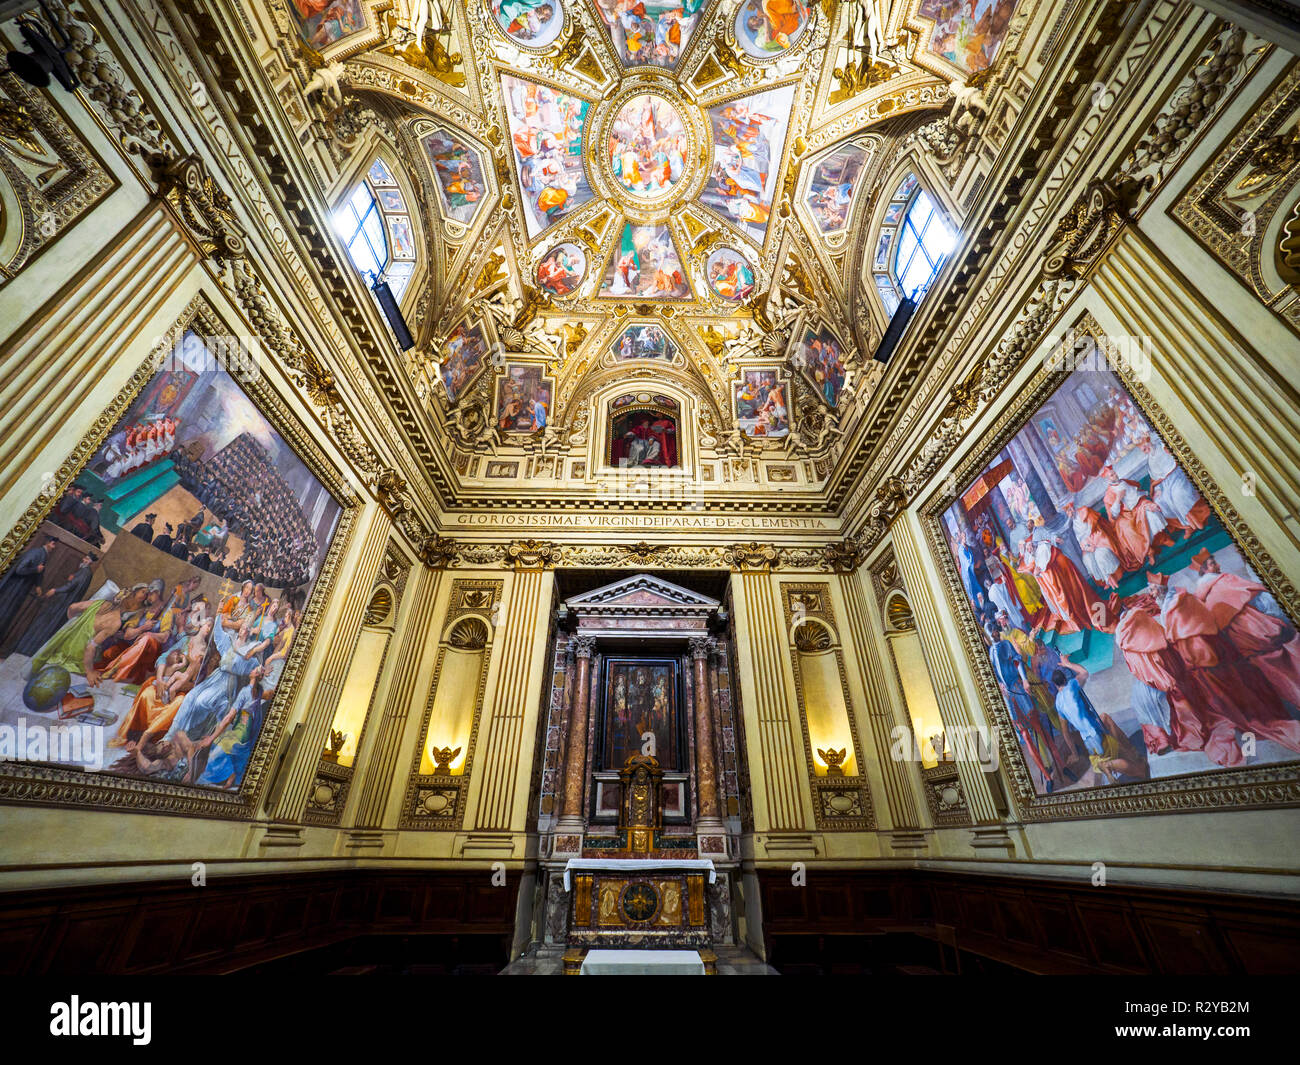 Altemps cappella nella basilica di Santa Maria in Trastevere - Roma, Italia  Foto stock - Alamy